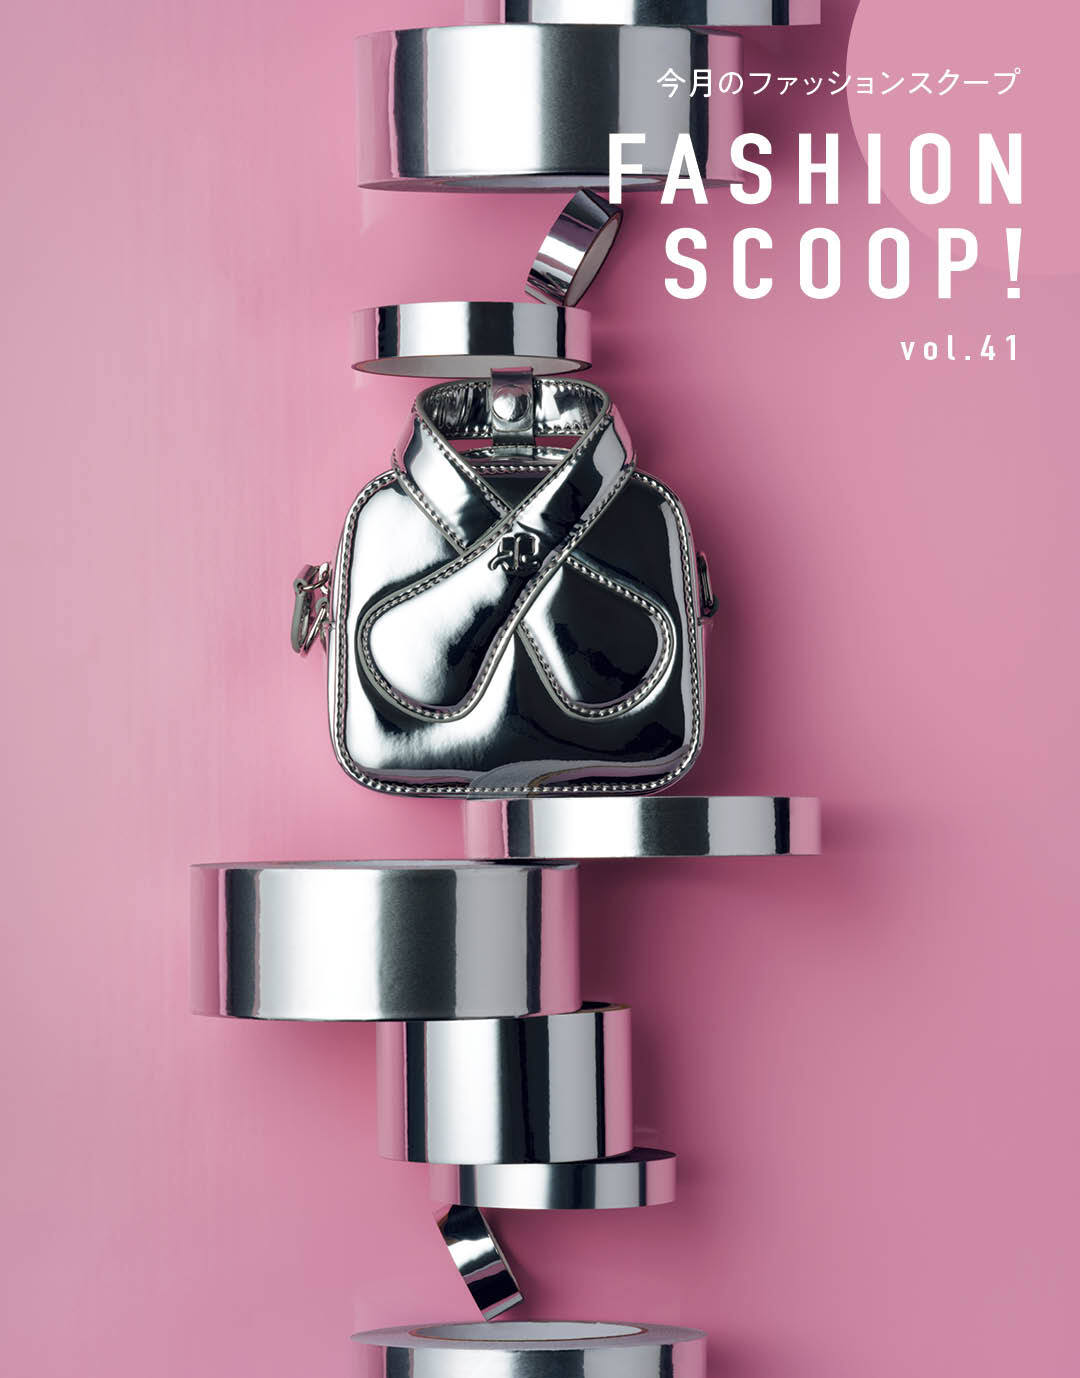 今月のファッションスクープ FASHION SCOOP! vol.41